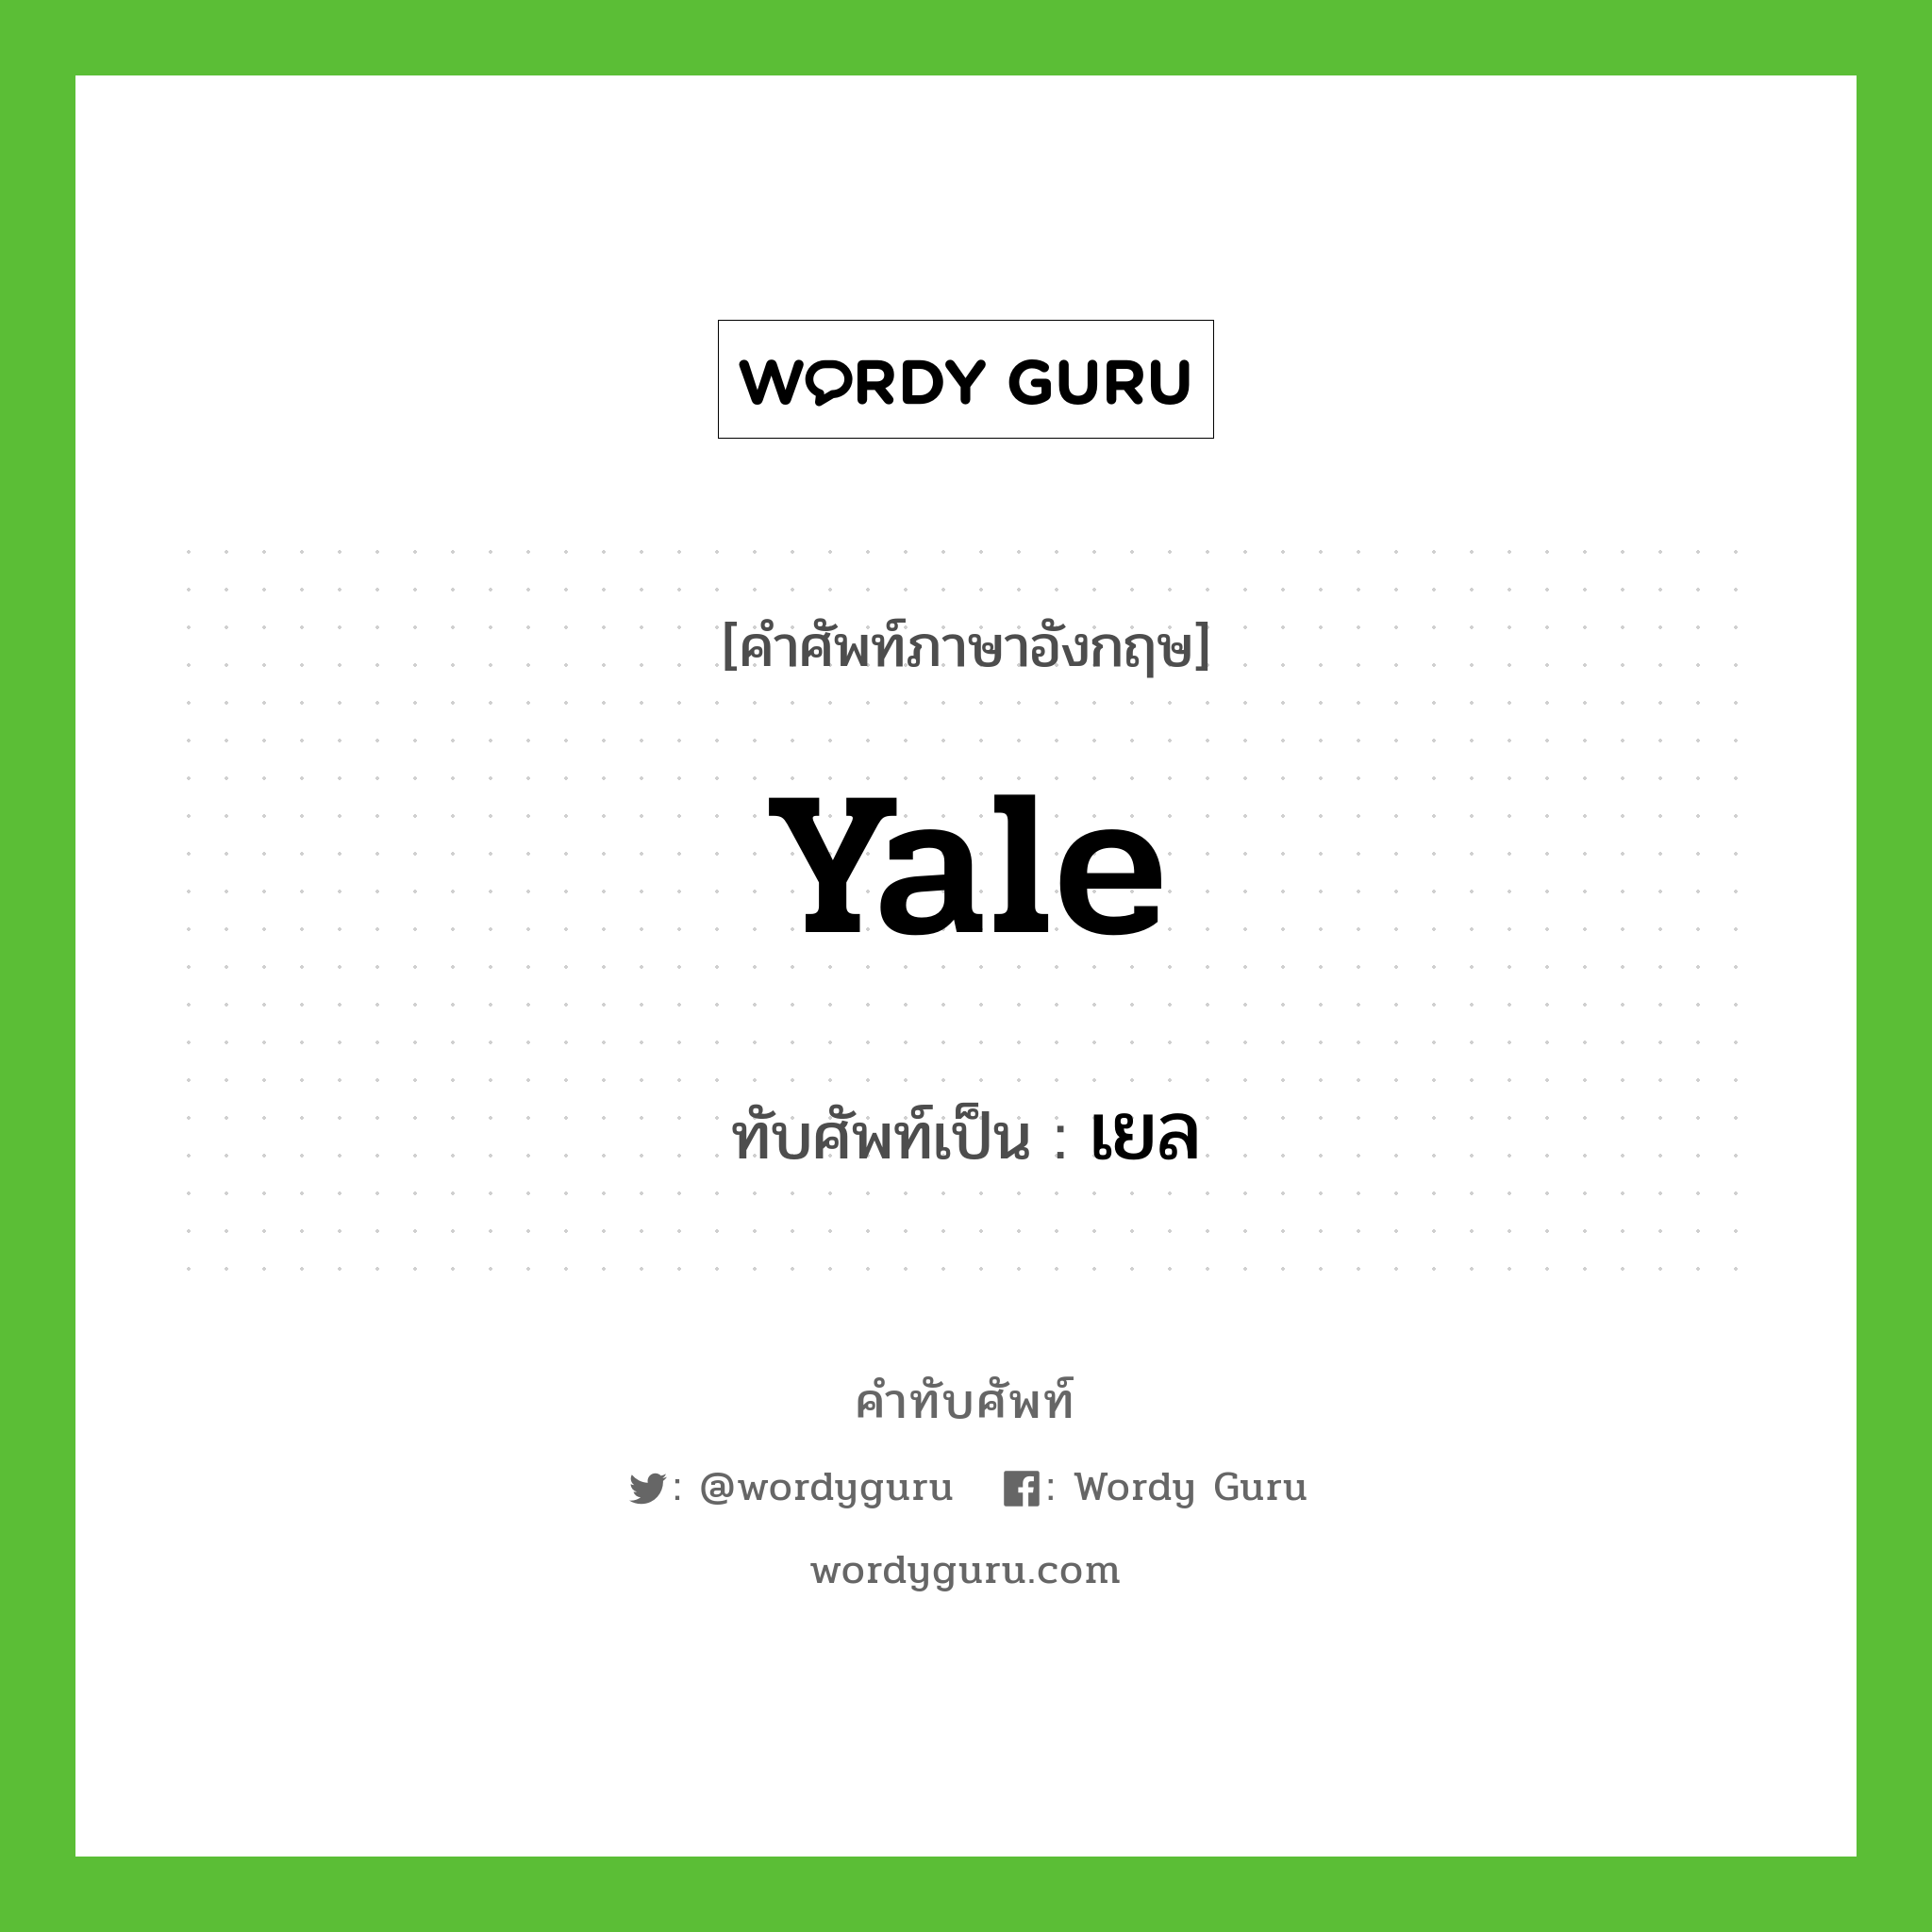 Yale เขียนเป็นคำไทยว่าอะไร?, คำศัพท์ภาษาอังกฤษ Yale ทับศัพท์เป็น เยล